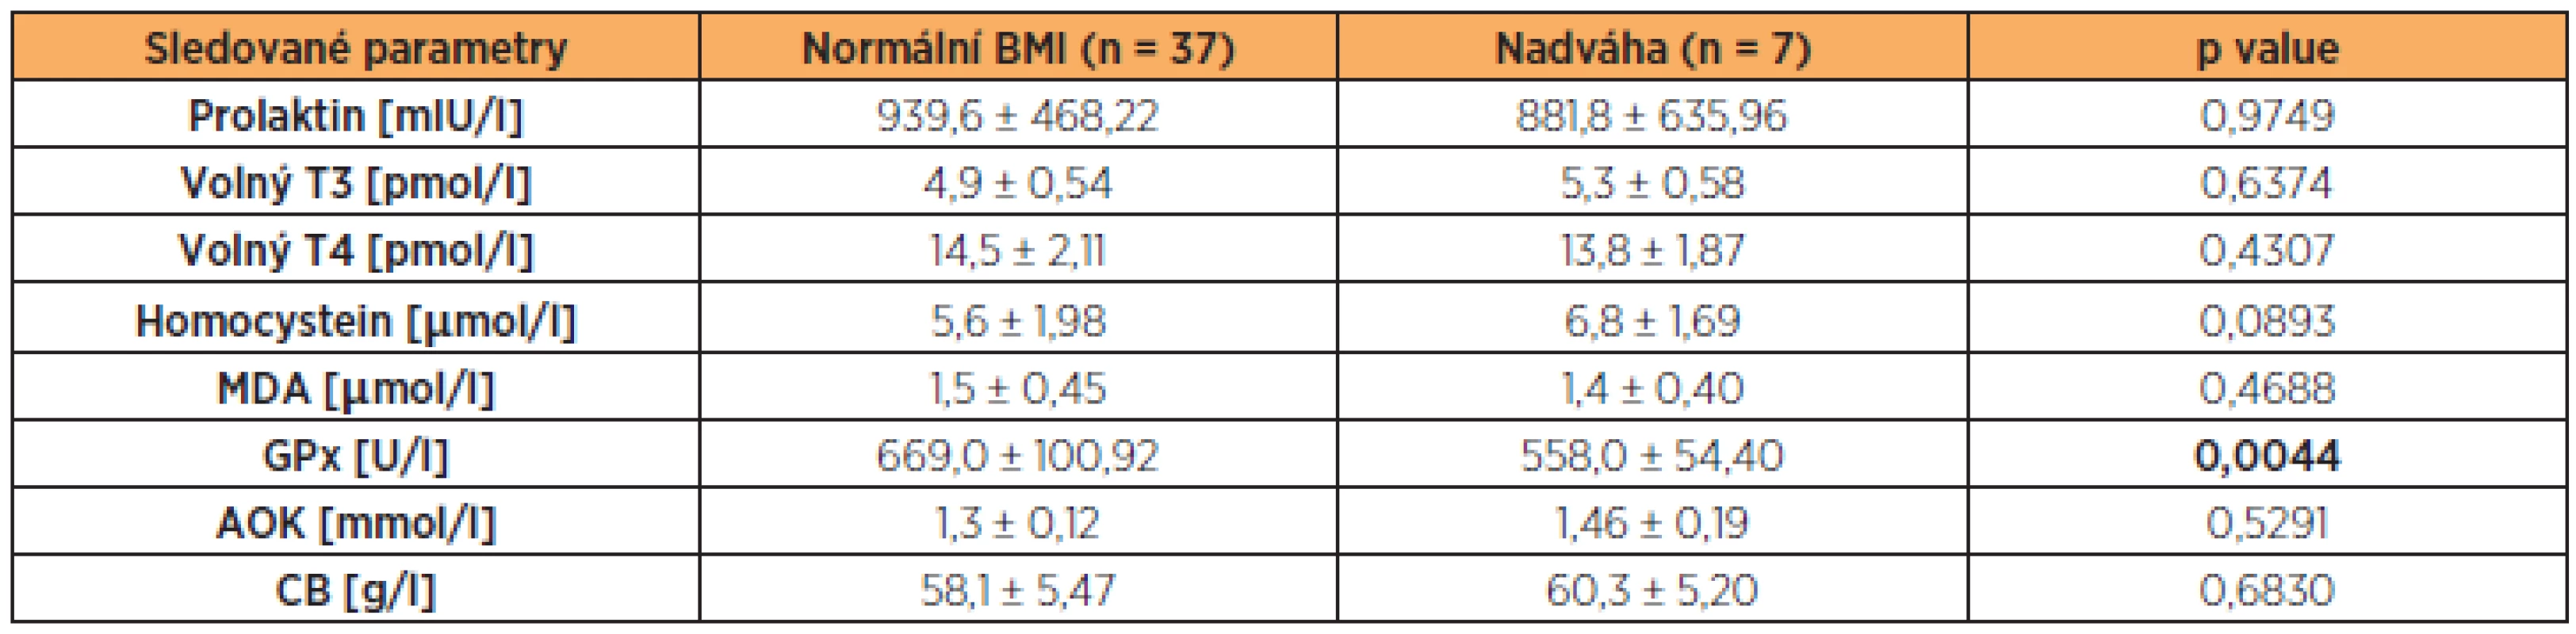 Hladiny prolaktinu, volného T3, volného T4, HCy, MDA, GPx, AOK a CB ve folikulární tekutině neplodných žen s normálním BMI a nadváhou (BMI ≥ 25 kg/m&lt;sup&gt;2&lt;/sup&gt;) (hodnoty jsou uvedeny jako průměr a směrodatná odchylka)